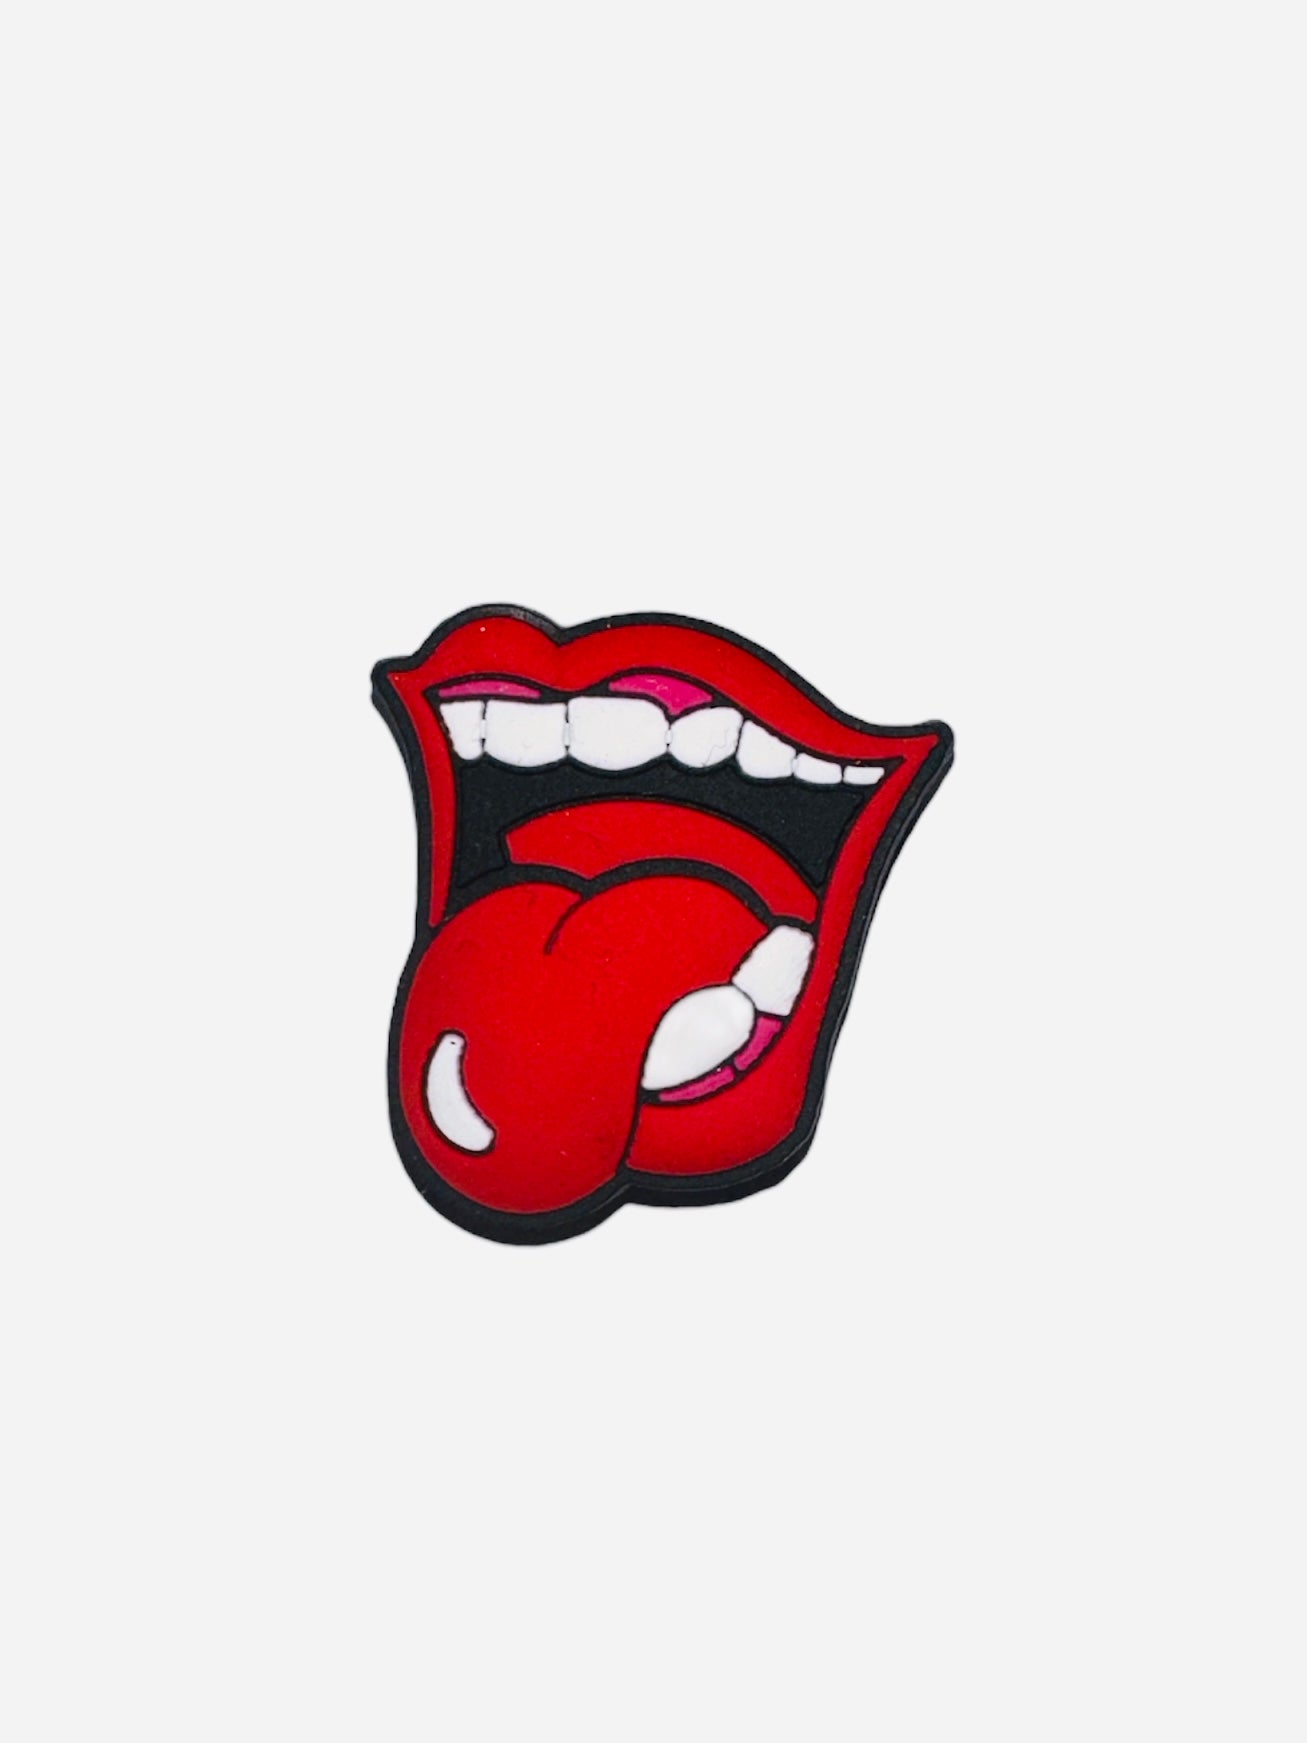 BiTZ - Tongue